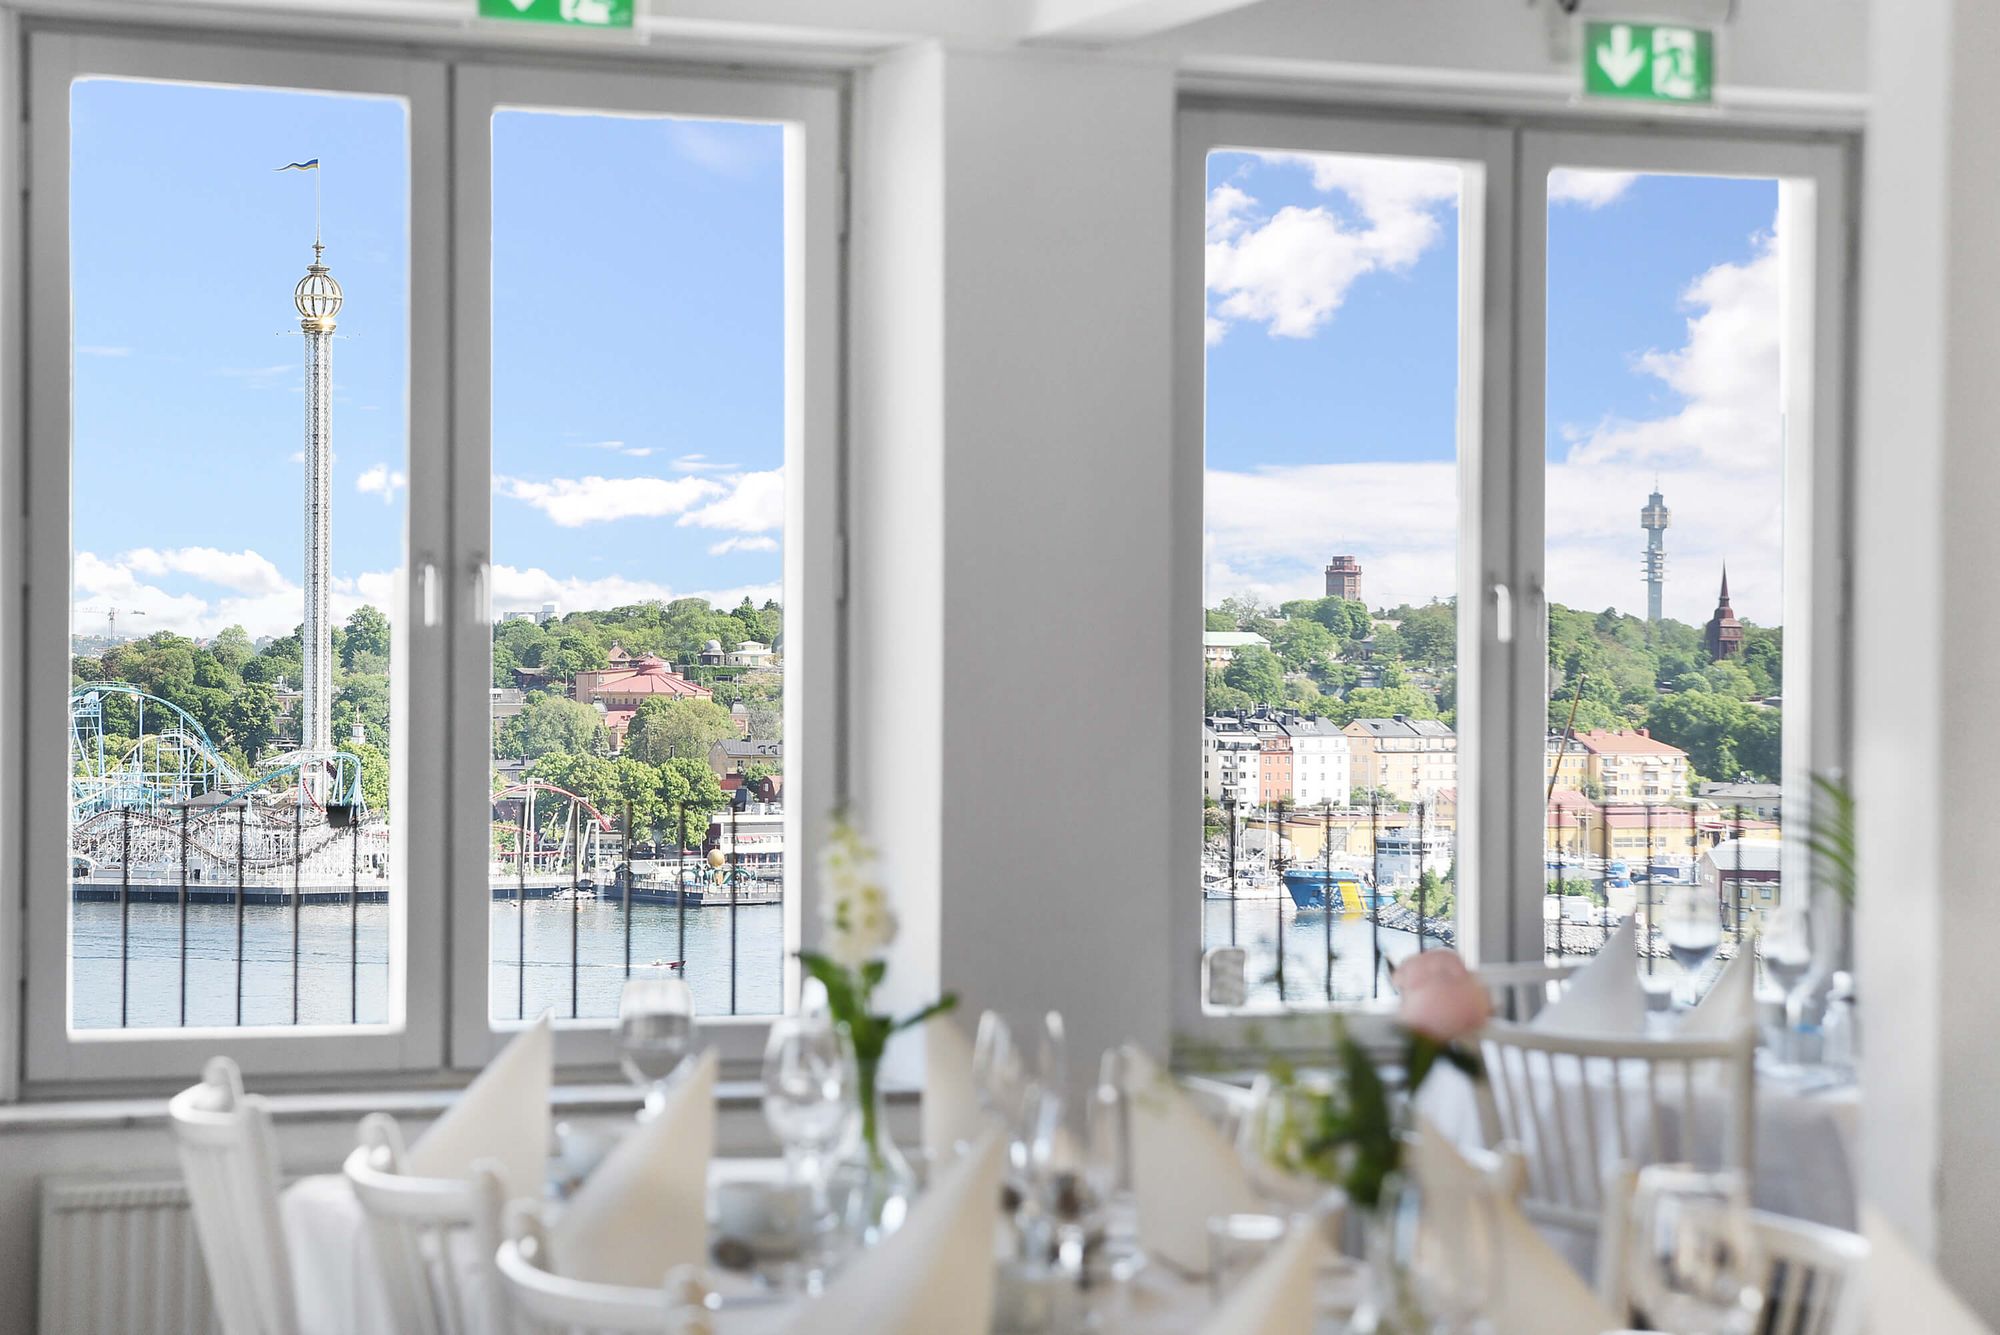 Hyllan är en del av Ersta terrass med en fantastisk panoramavy över Stockholm